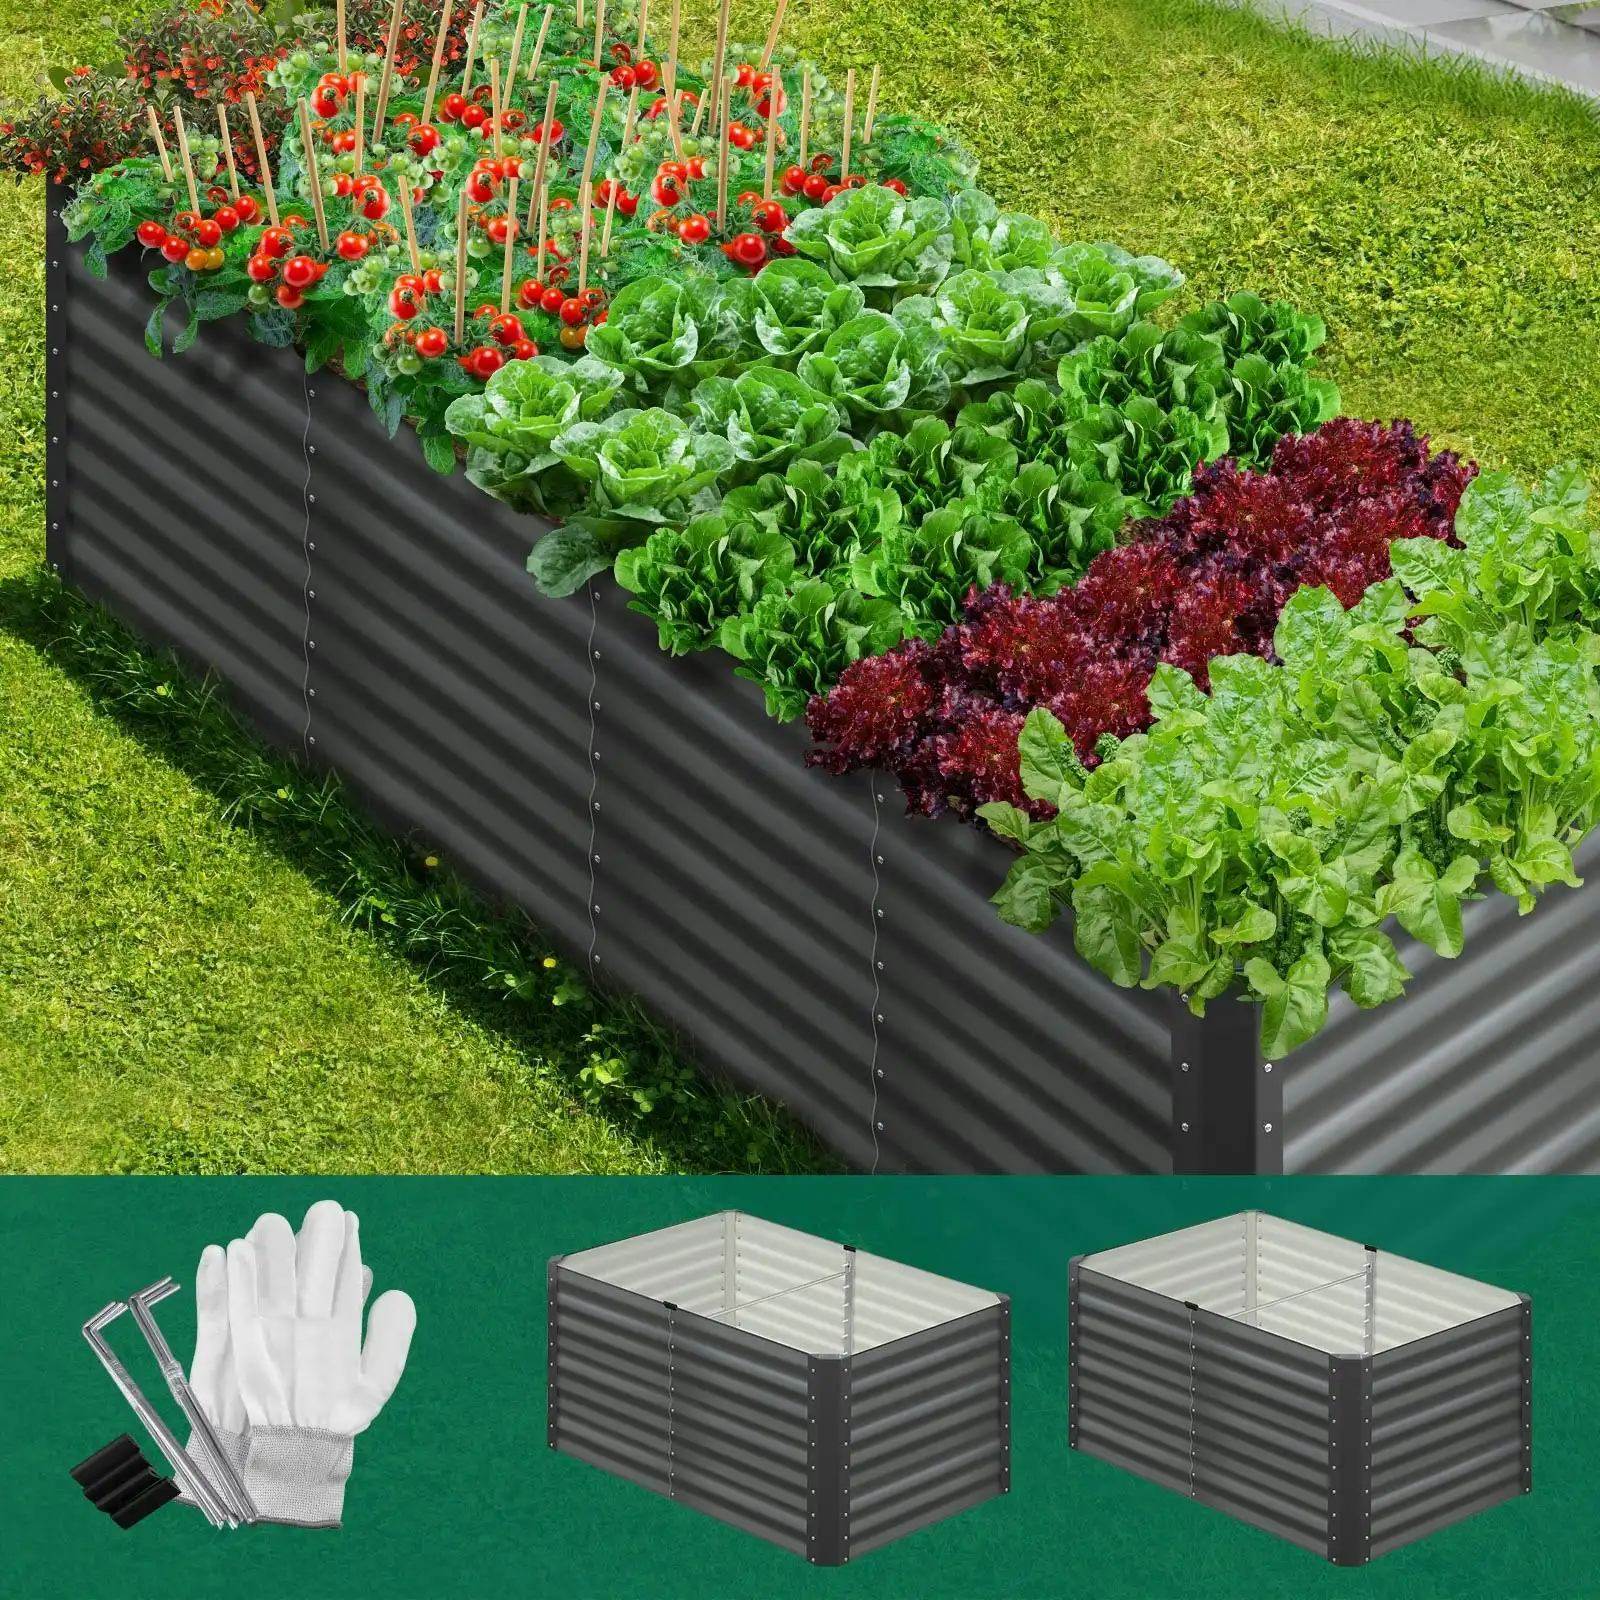 Livsip Garden Bed Kits Raised Vegetable Planter Galvanised Steel 240x80x73CM